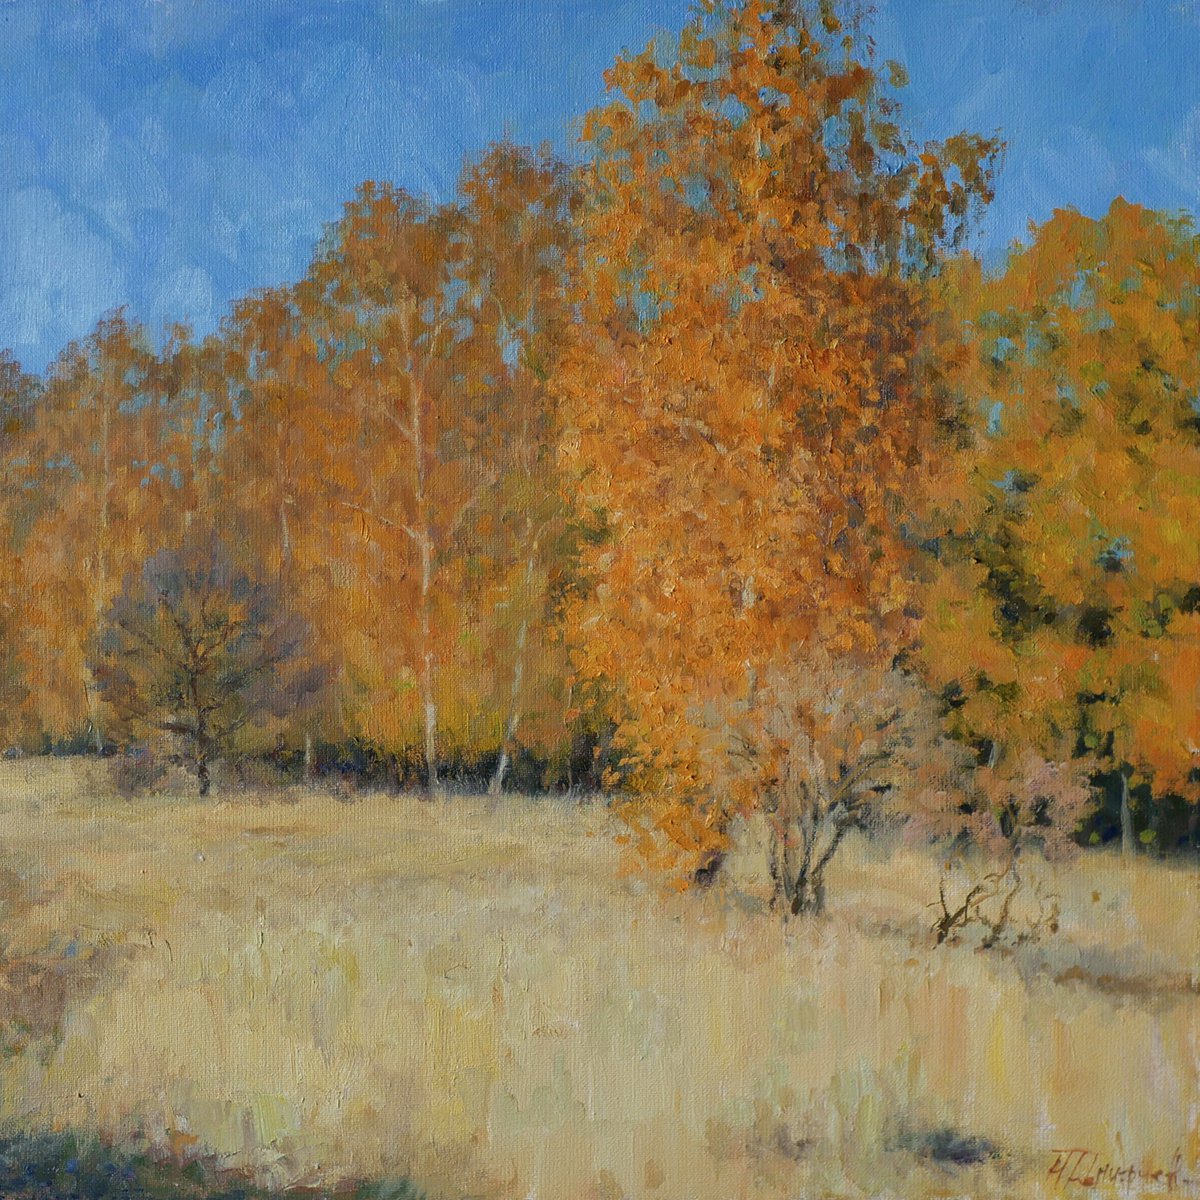 Autumn landscape painting by Nikolay Dmitriev